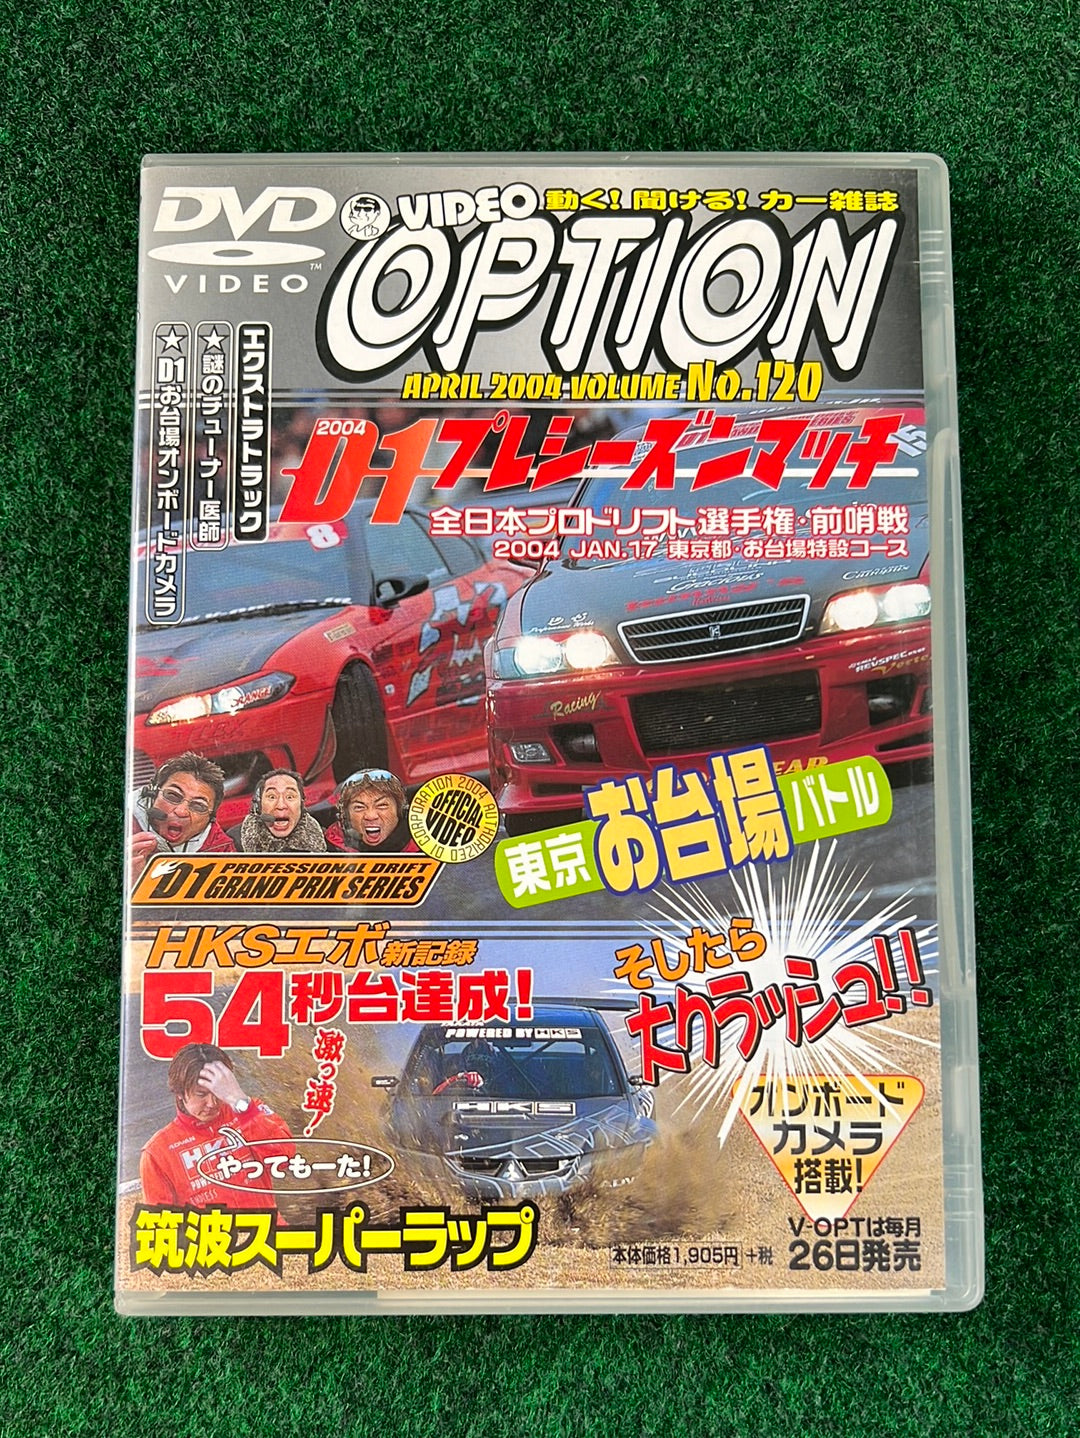 Option Video DVD - D1 Preseason Match 2004 Vol. 120 DVD